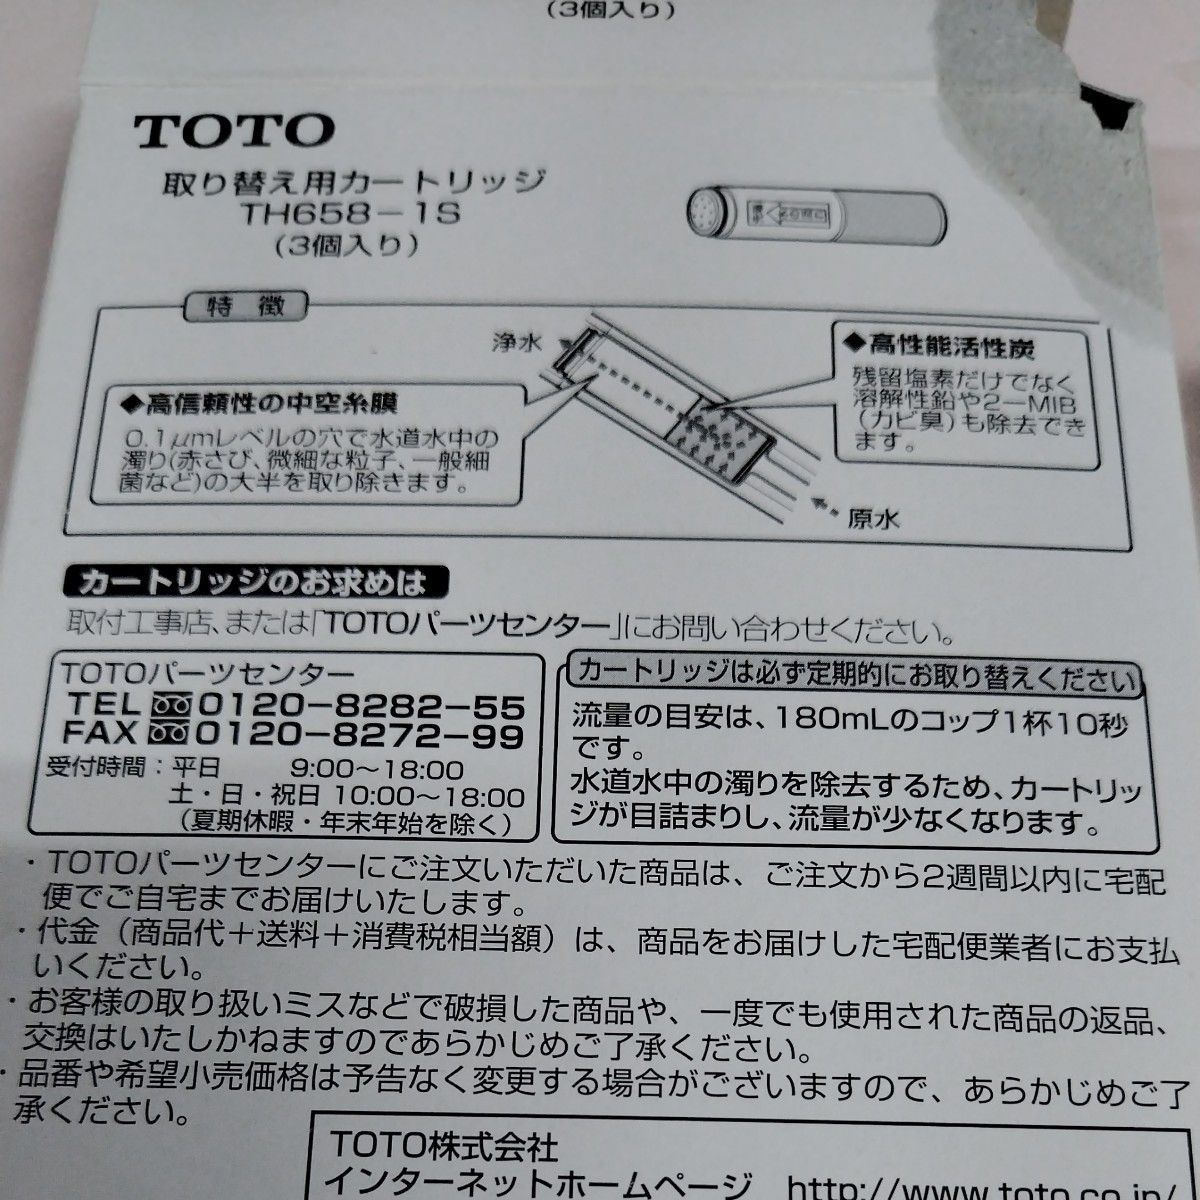 TOTO 取り替え用カートリッジ  TH658-1S  1本